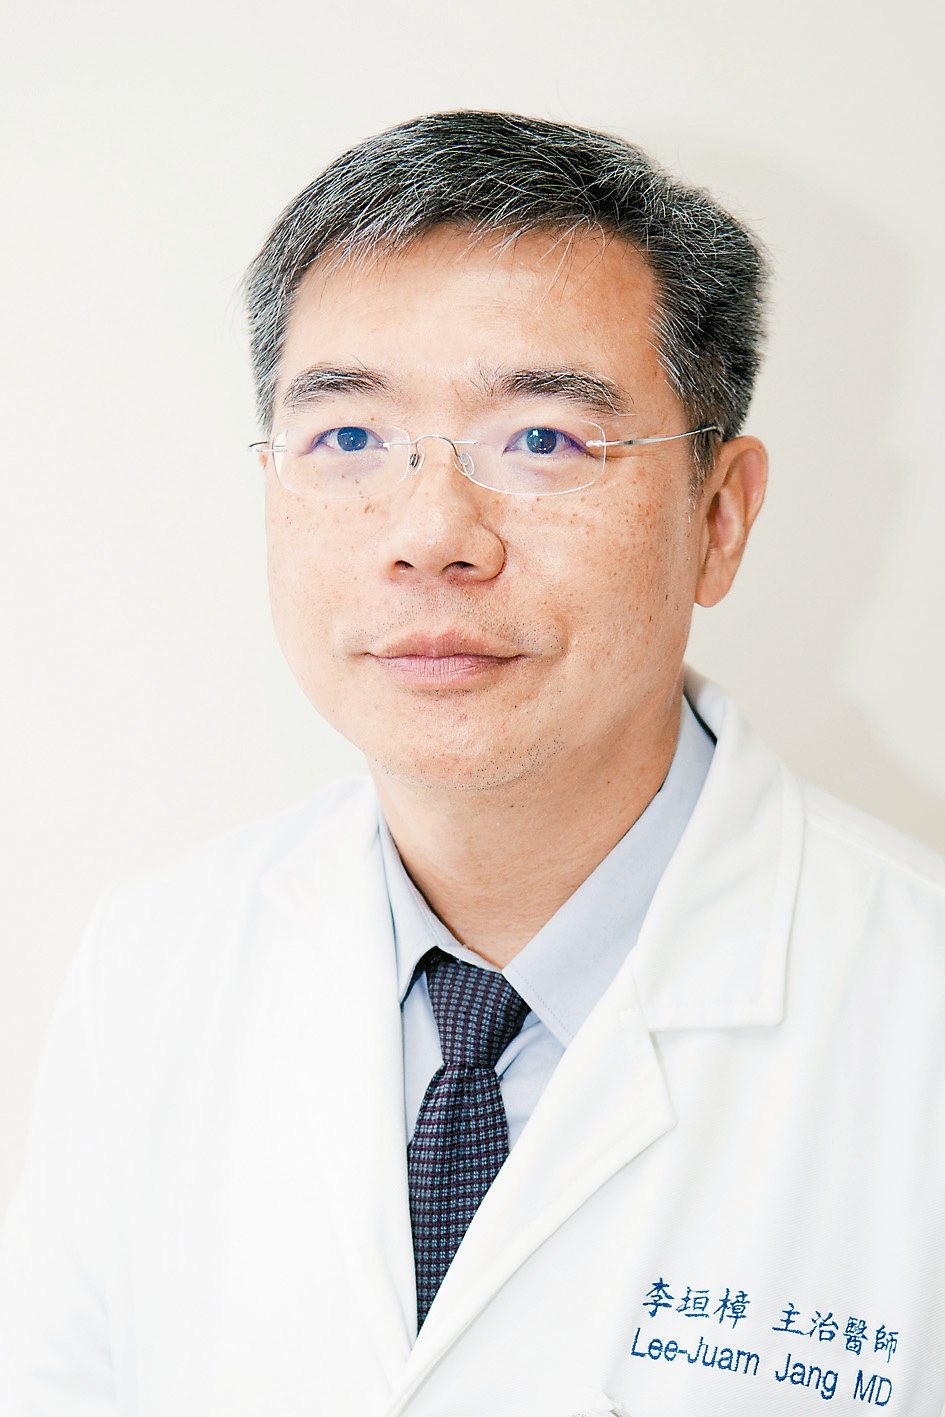 台北醫學大學附設醫院成人感染科主任李垣樟